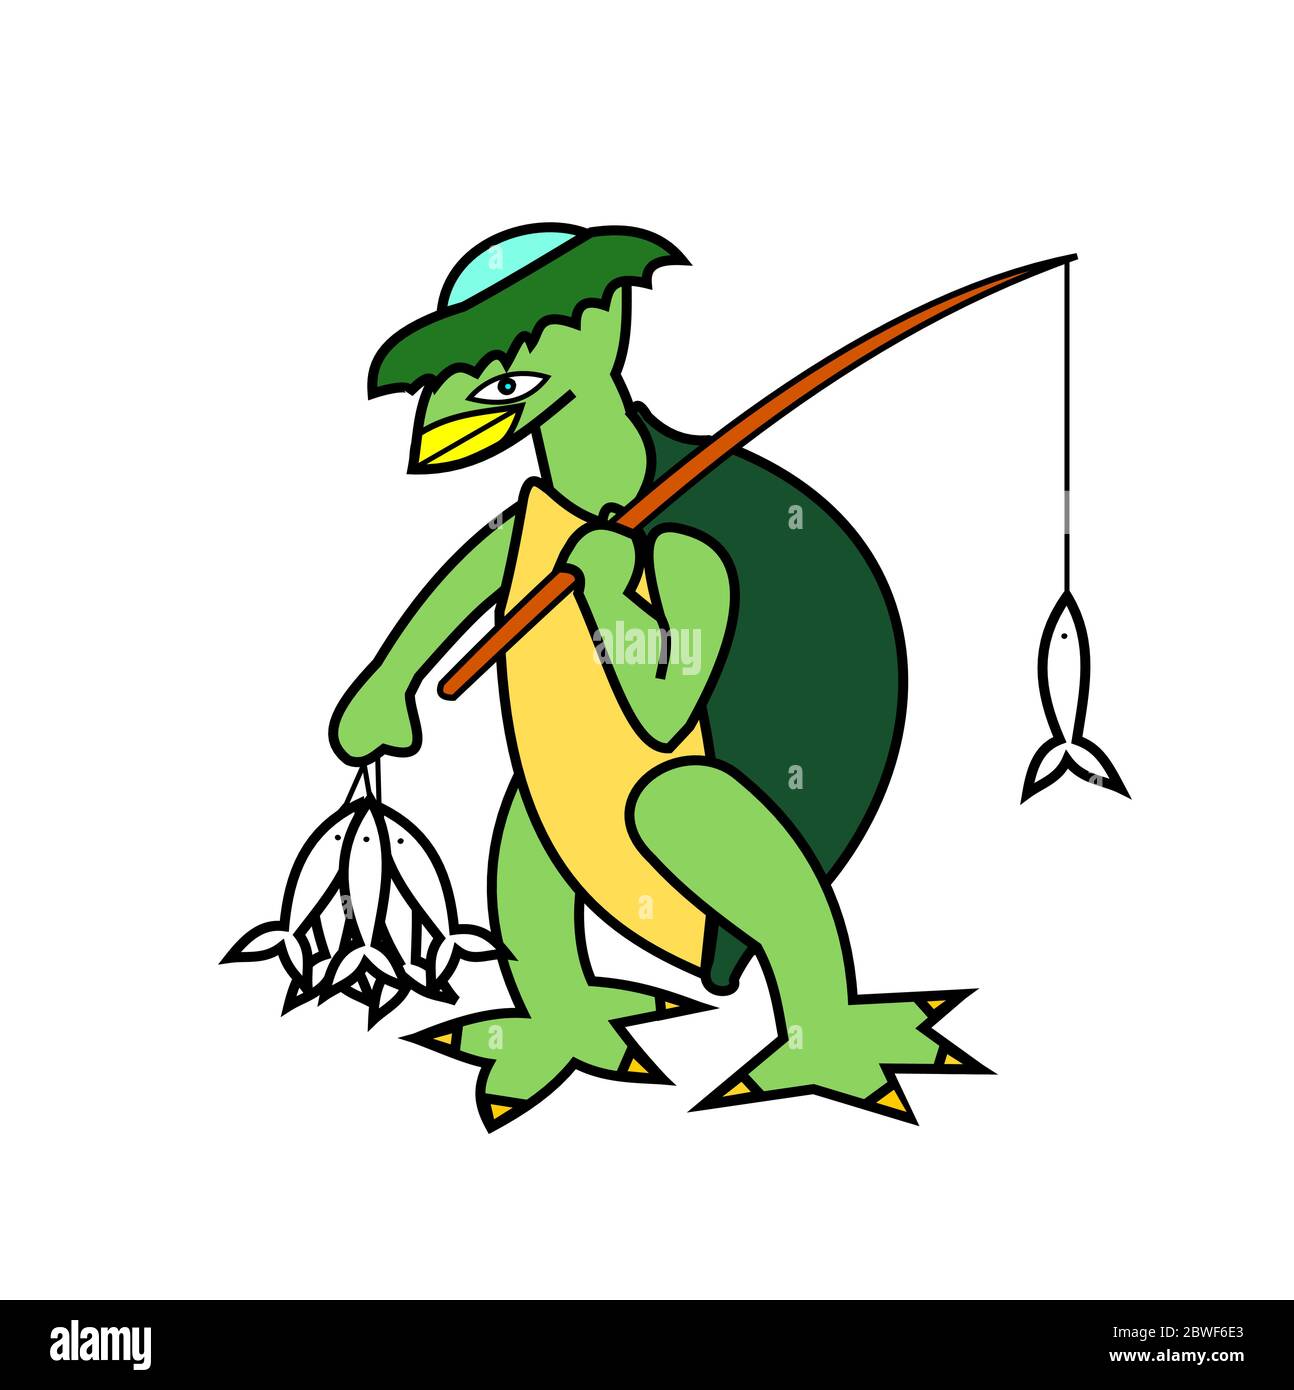 Kappa caminando y sosteniendo una caña de pescar y un pez, Demonio en los  mitos y creencias de la cultura japonesa, el fantasma verde se asemeja a  una tortuga Imagen Vector de